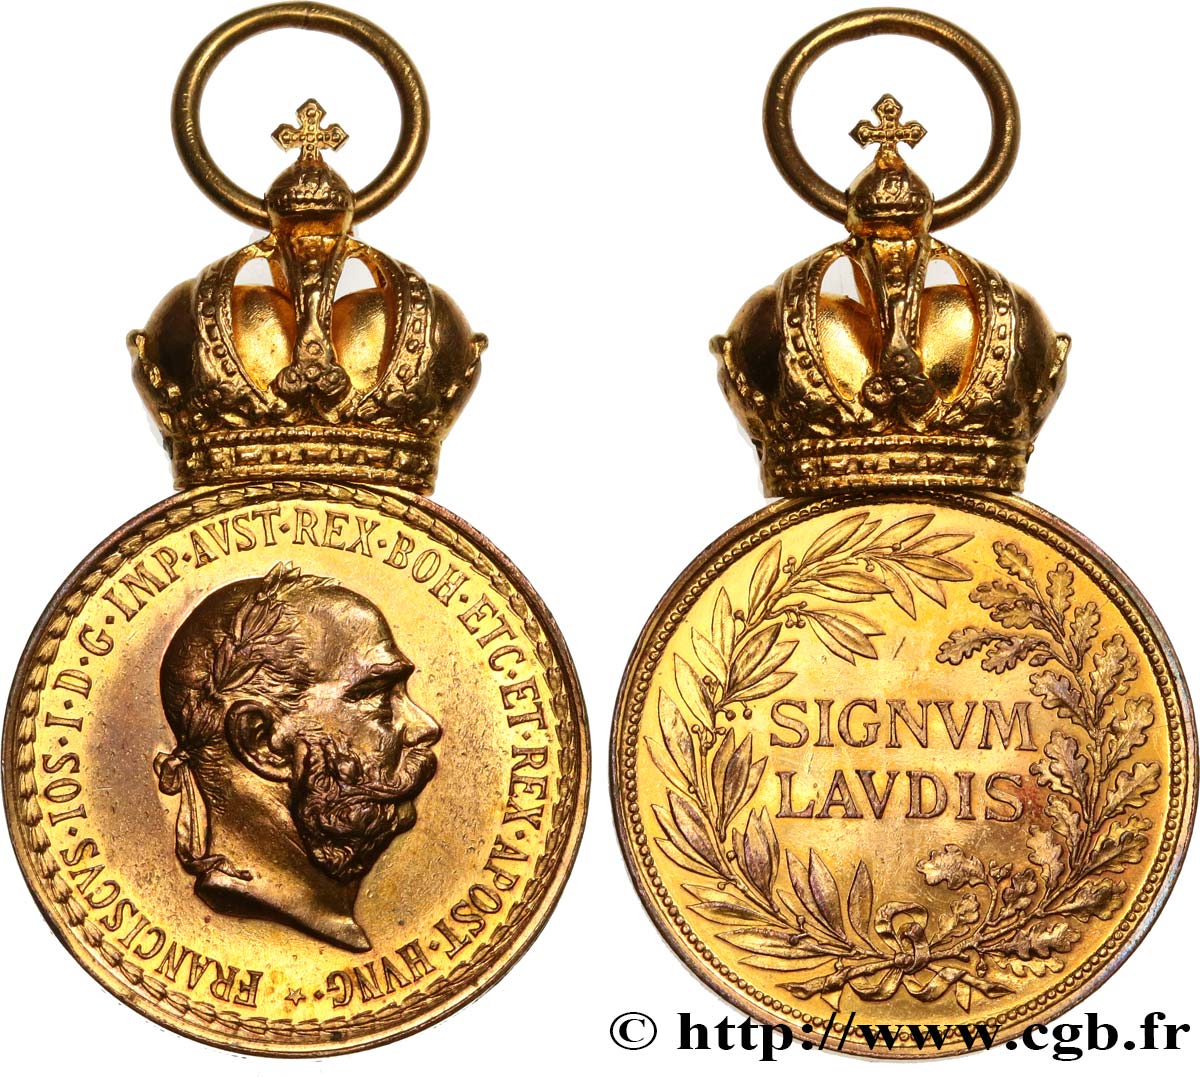 AUSTRIA - FRANZ-JOSEPH I Médaille militaire, Signum Laudis AU/AU